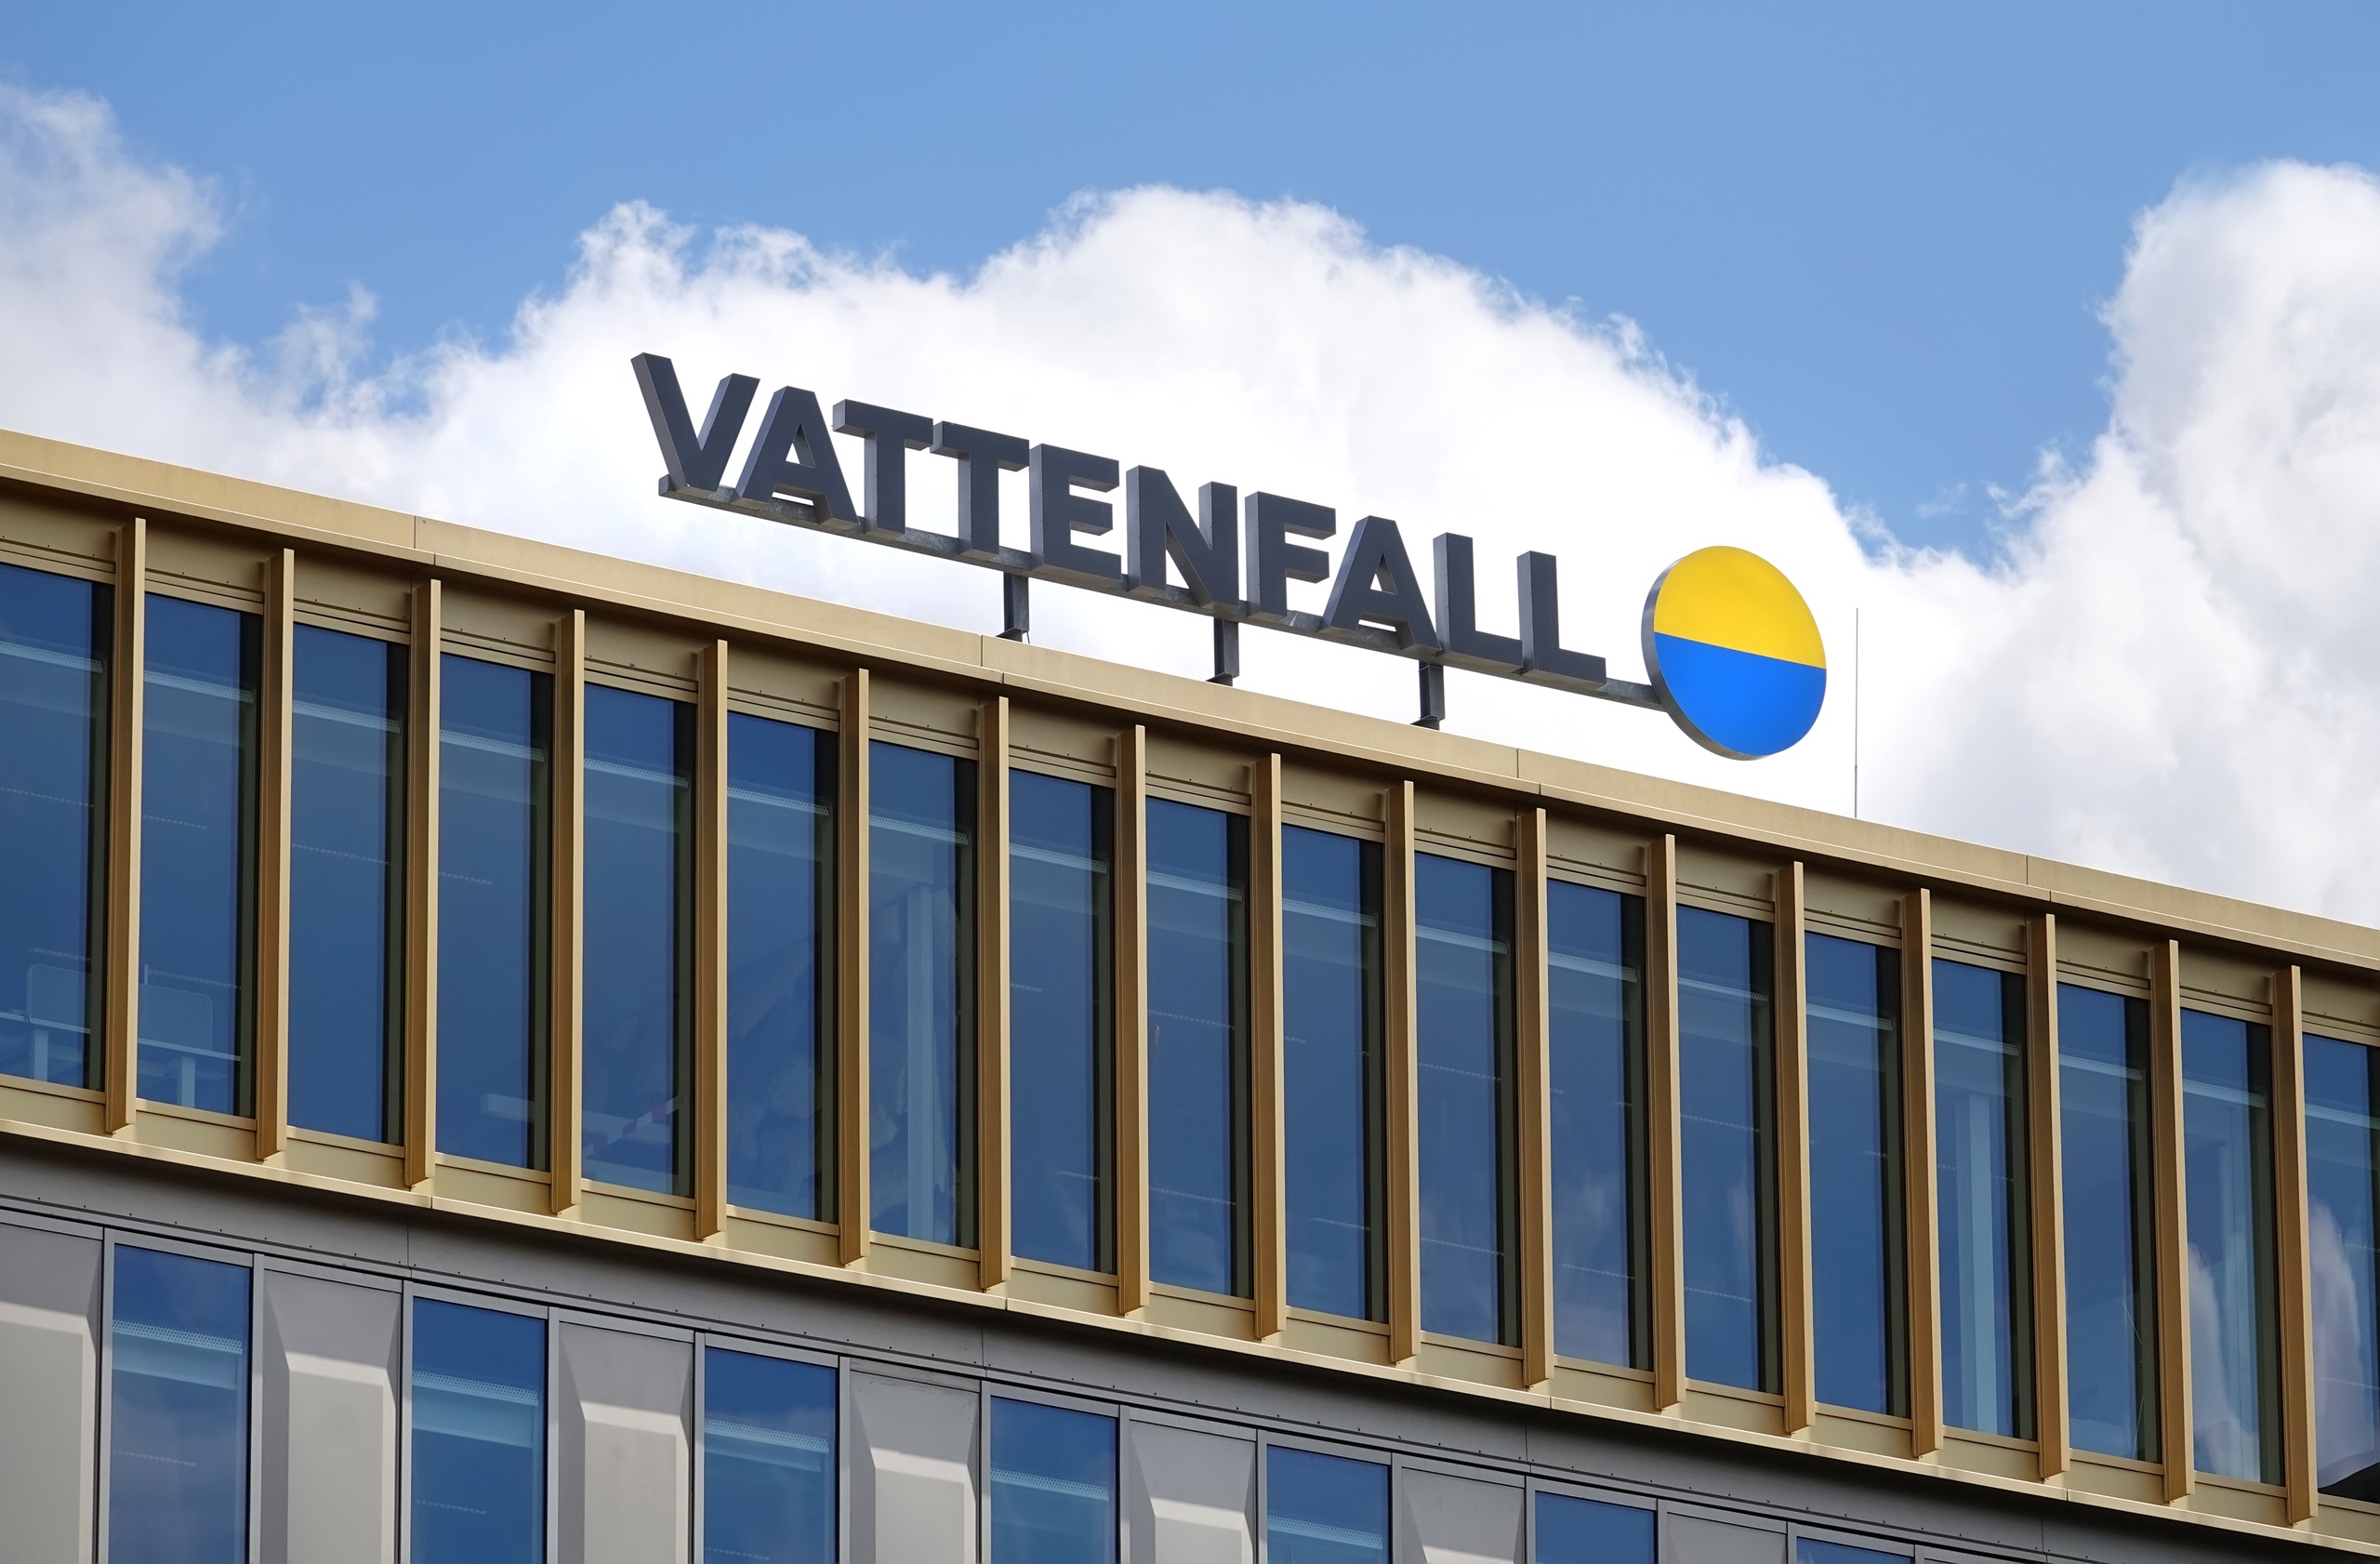 Het van oorsprong Zweedse energiebedrijf Vattenfall waarschuwt voor 'grote onzekerheden' in aanloop naar de winterperiode. 